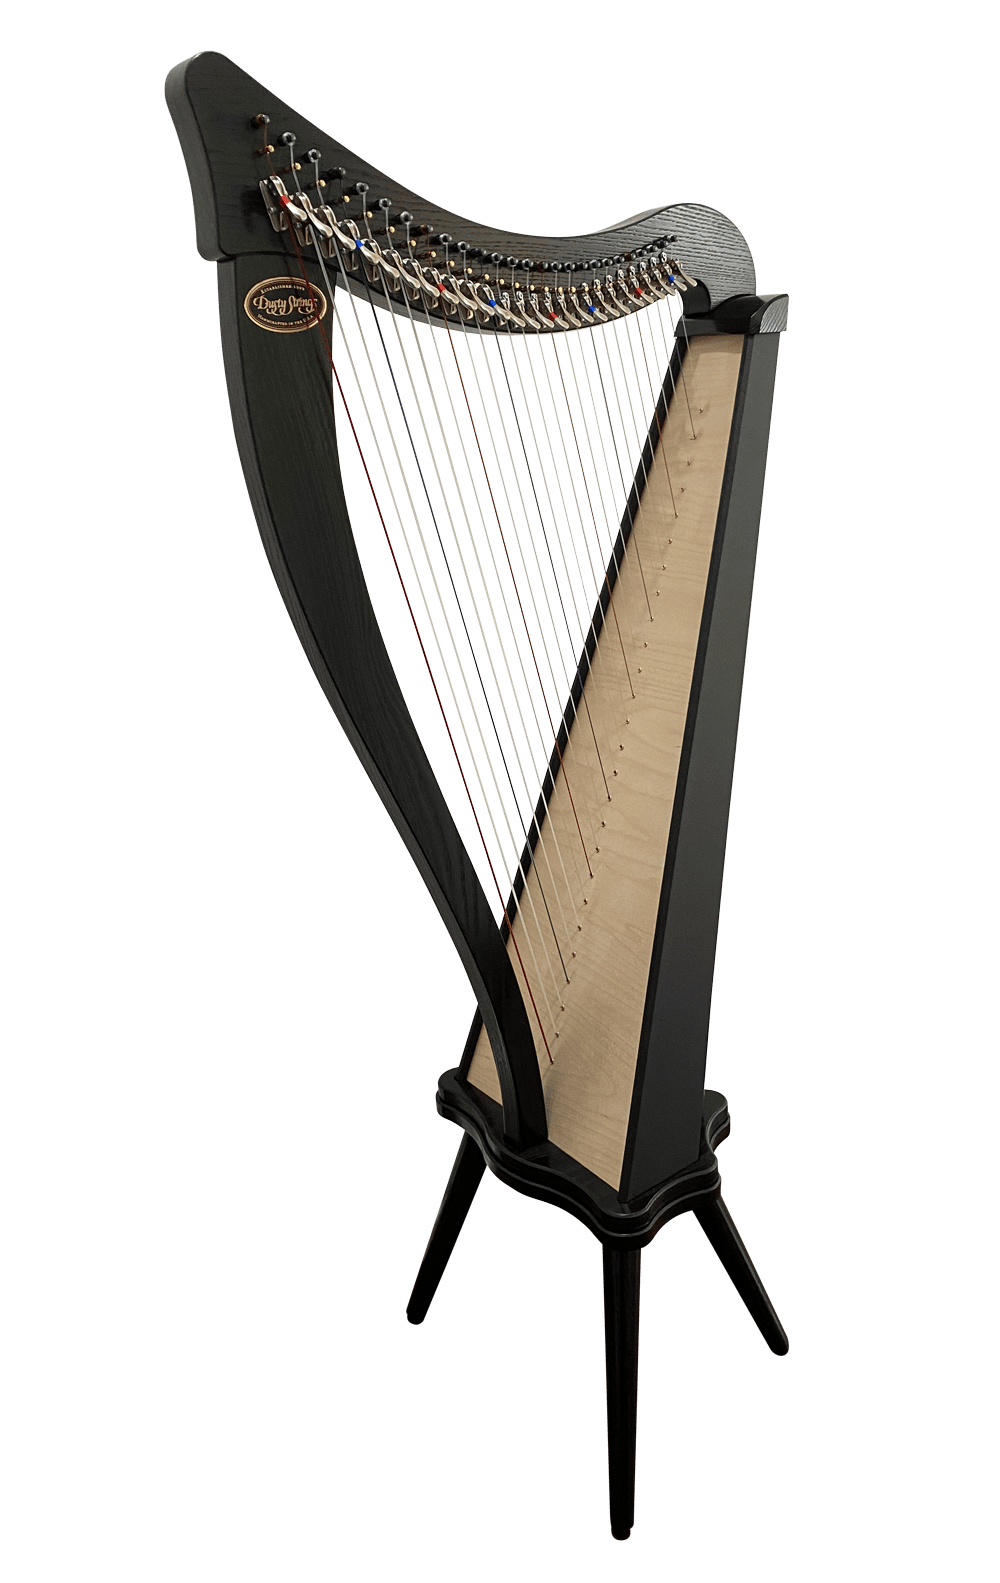 Harps and harps Ravenna26